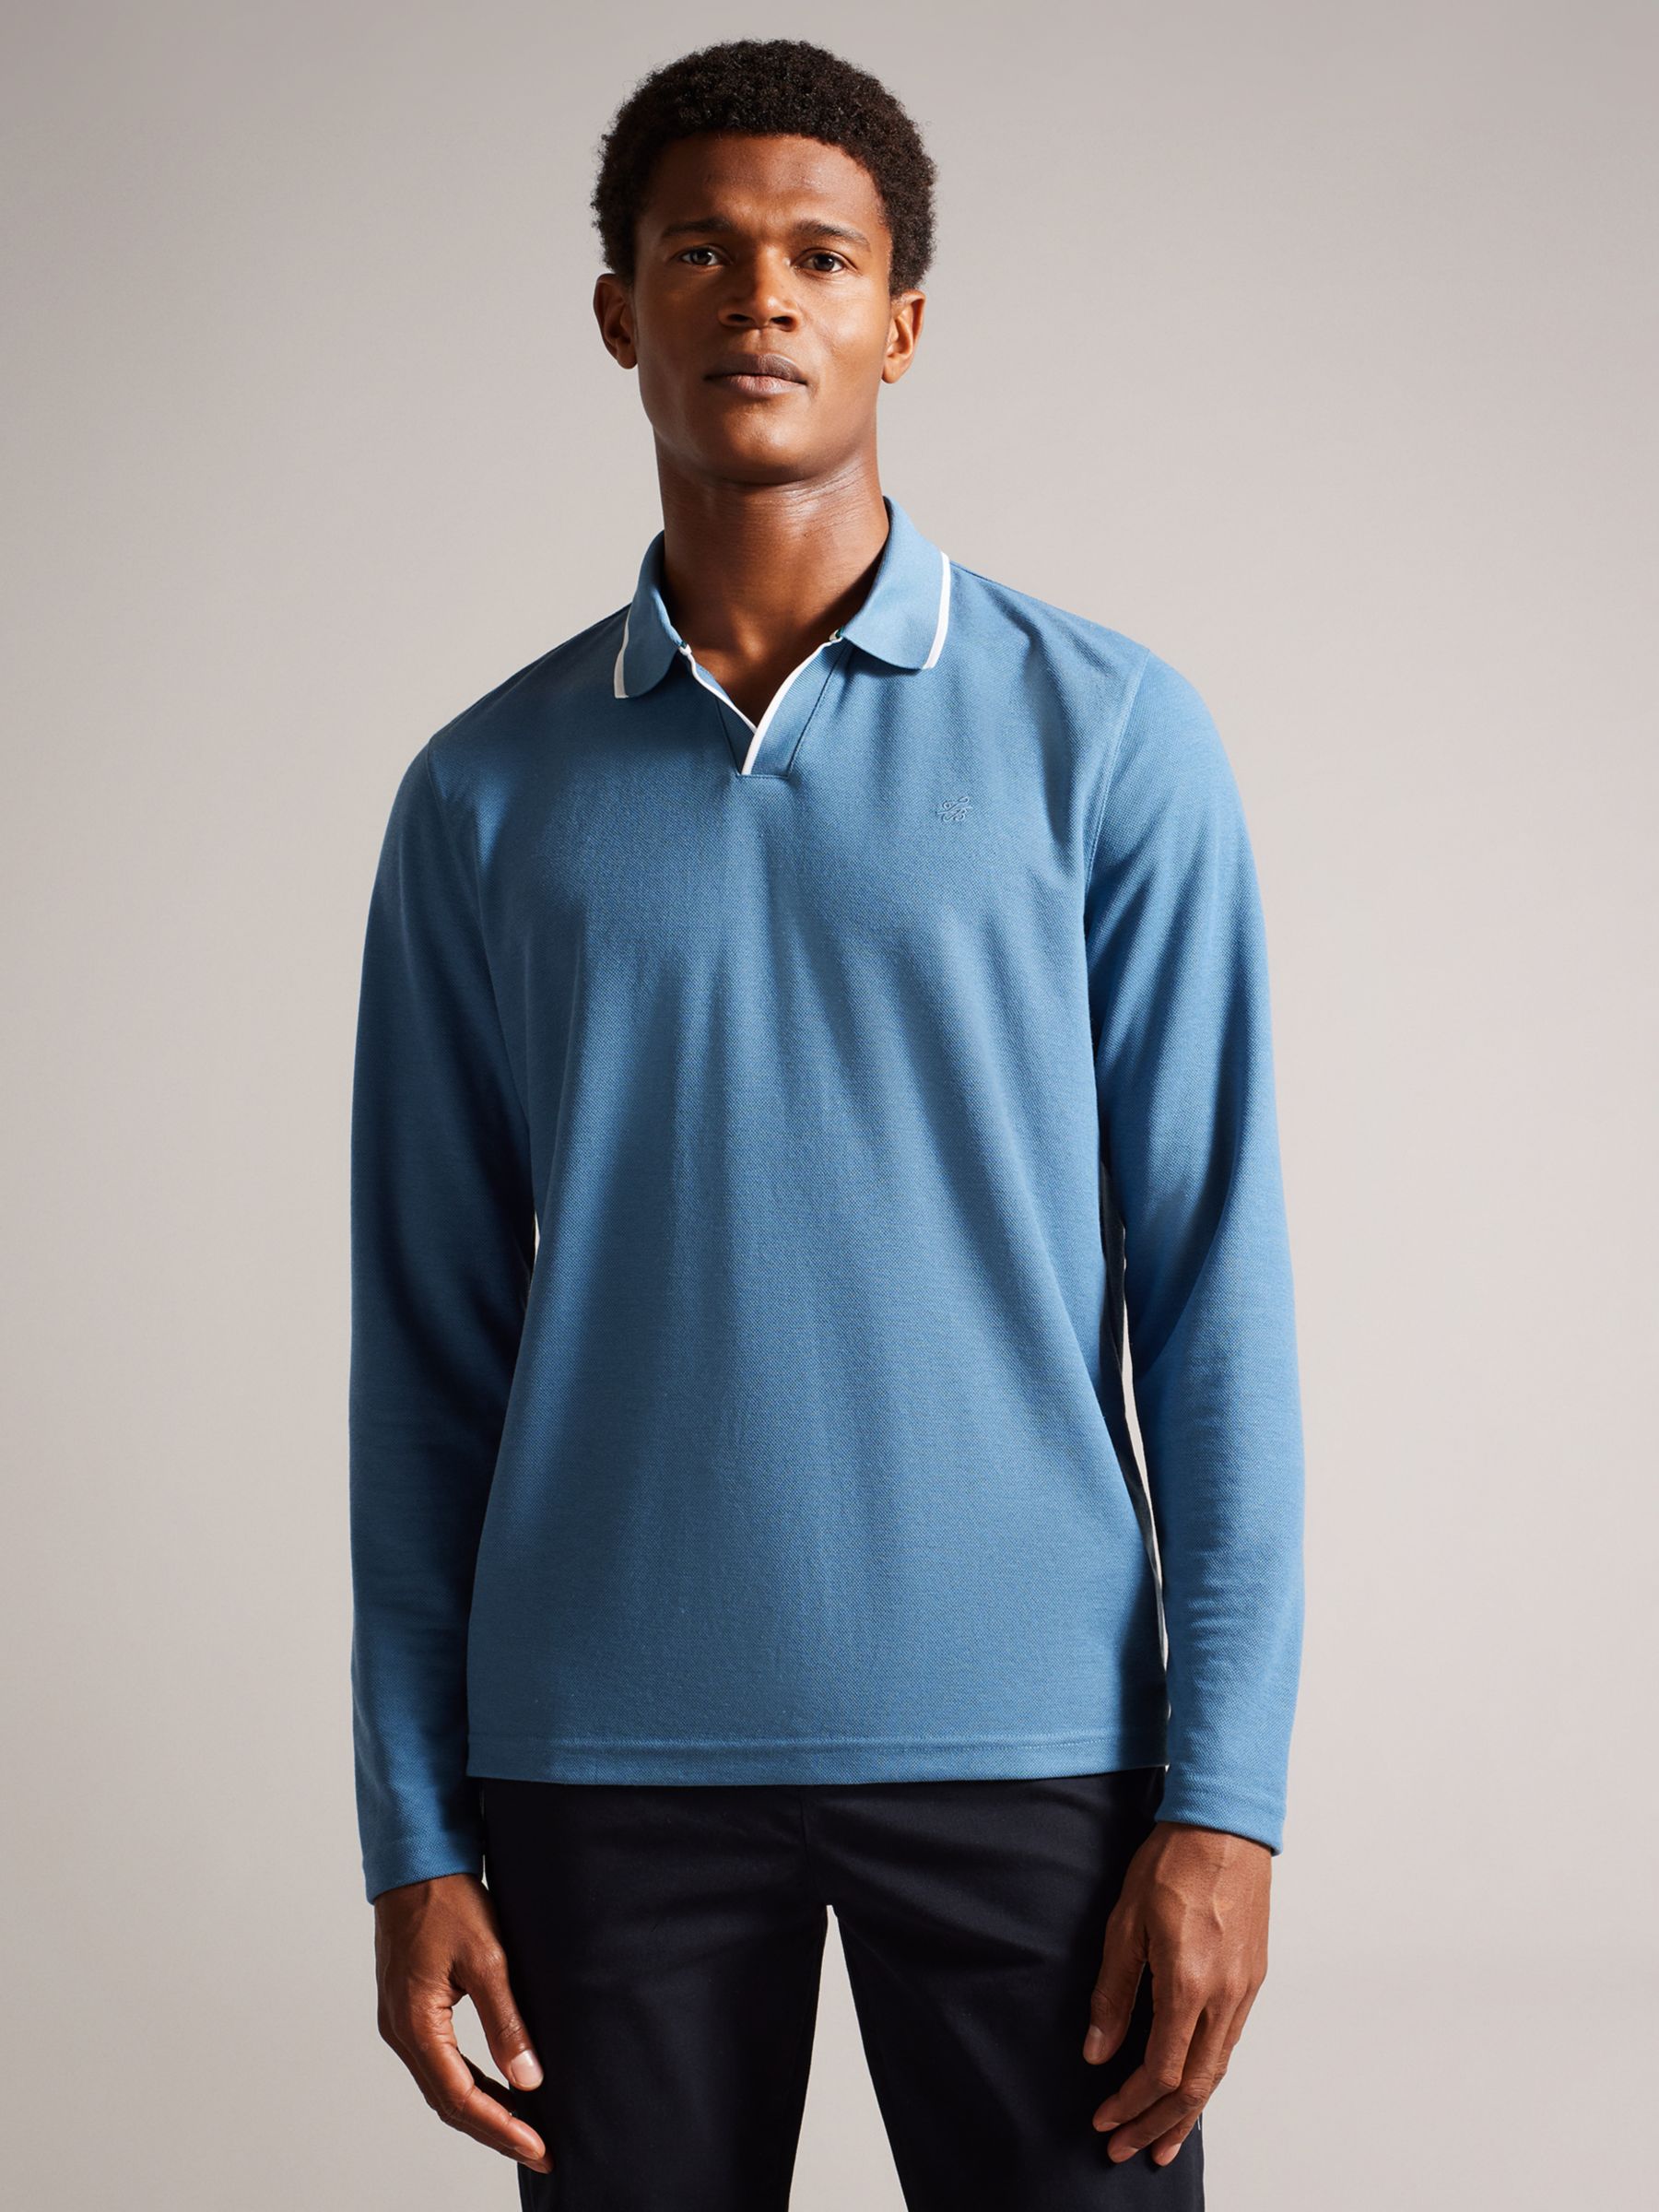 Рубашка поло стандартного размера с длинными рукавами Maste Ted Baker, синий ted baker свитер